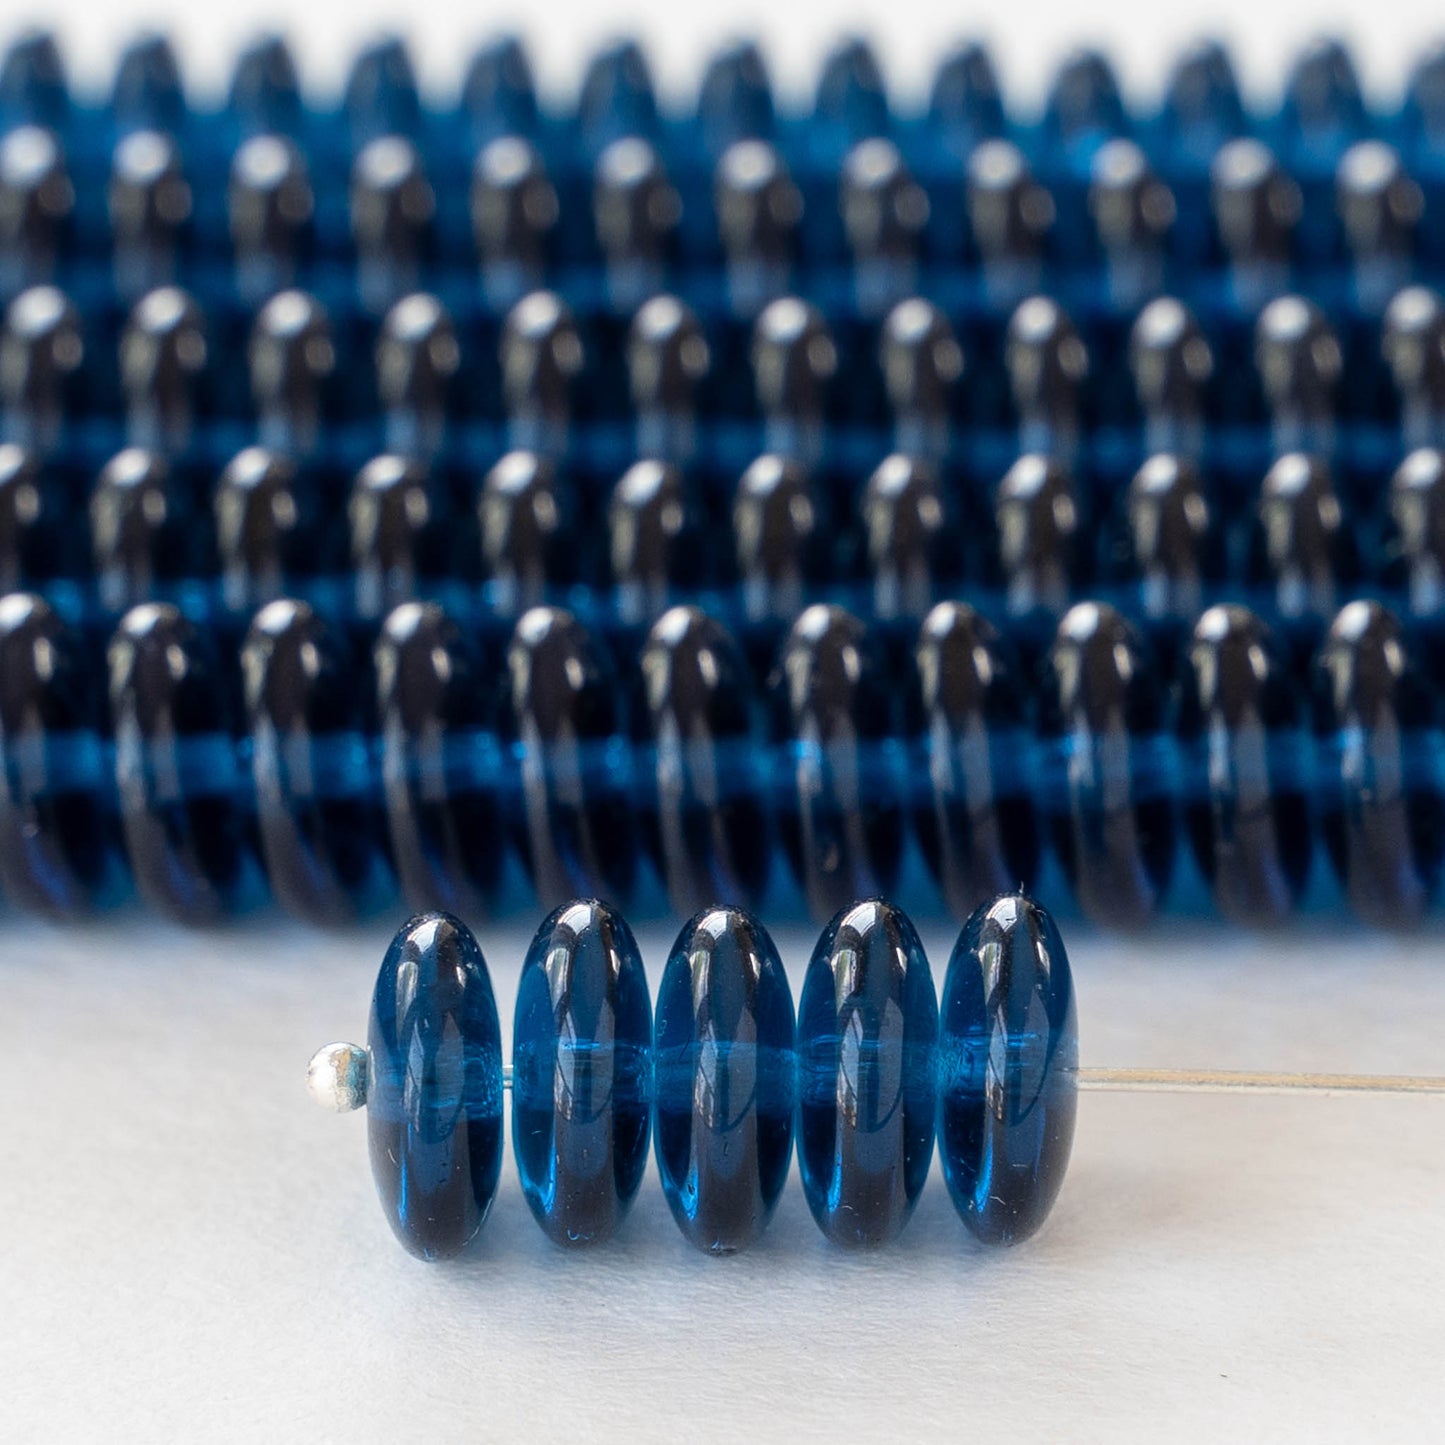 10mm Rondelle Beads - Capri Blue  - 30 Beads